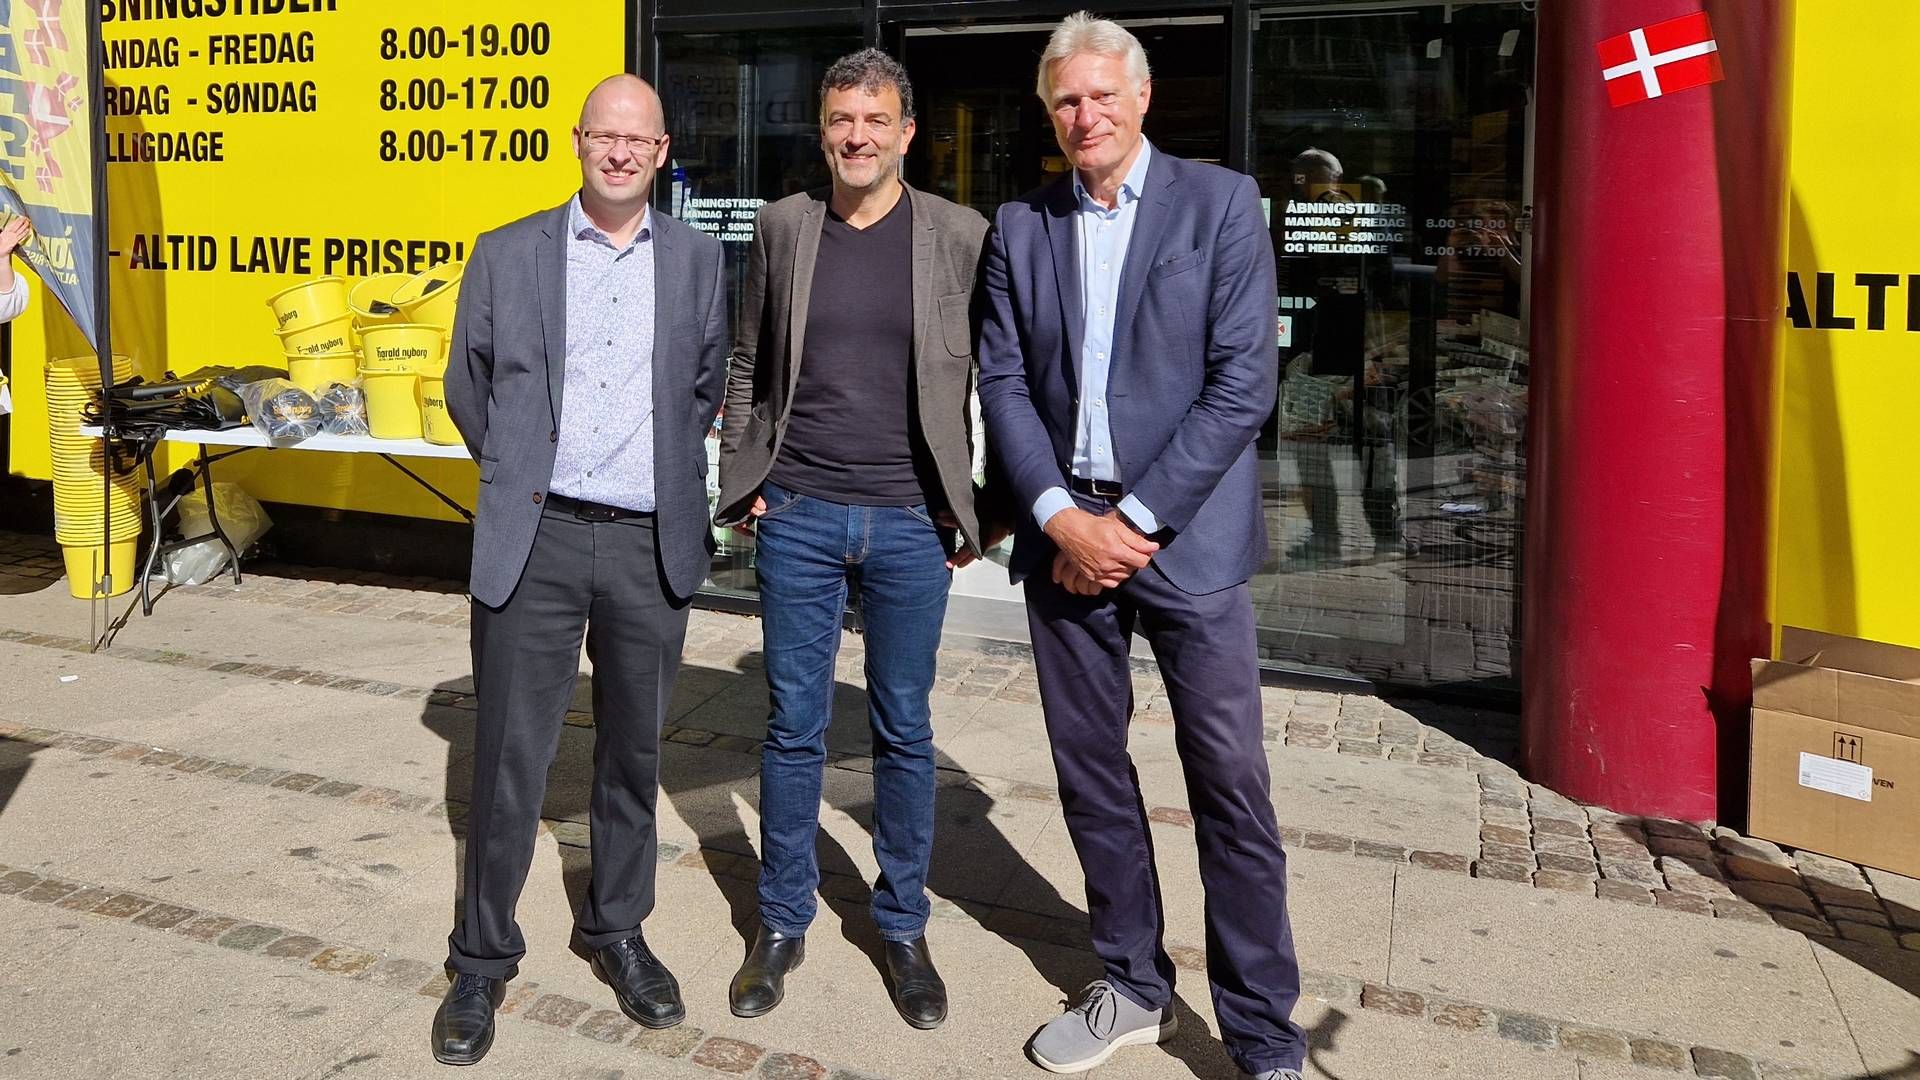 Gert Sand, Erling Daell og Arne Gerlyng-Hansen foran Harald Nyborgs første butik i indre København. | Foto: Jens Betak